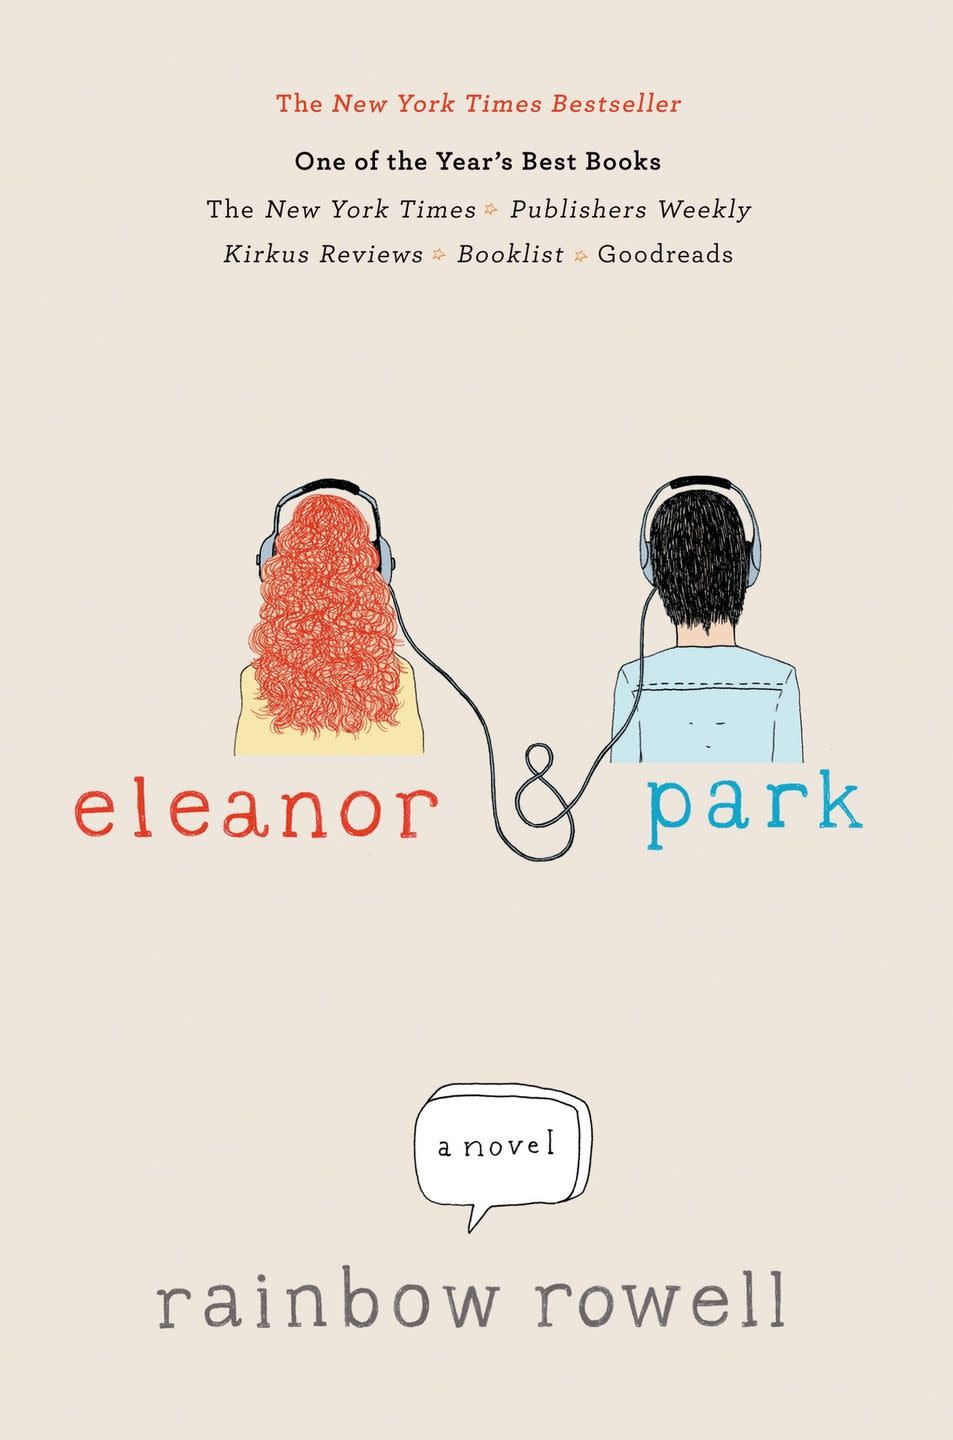 33) “Eleanor & Park” by Rainbow Rowell